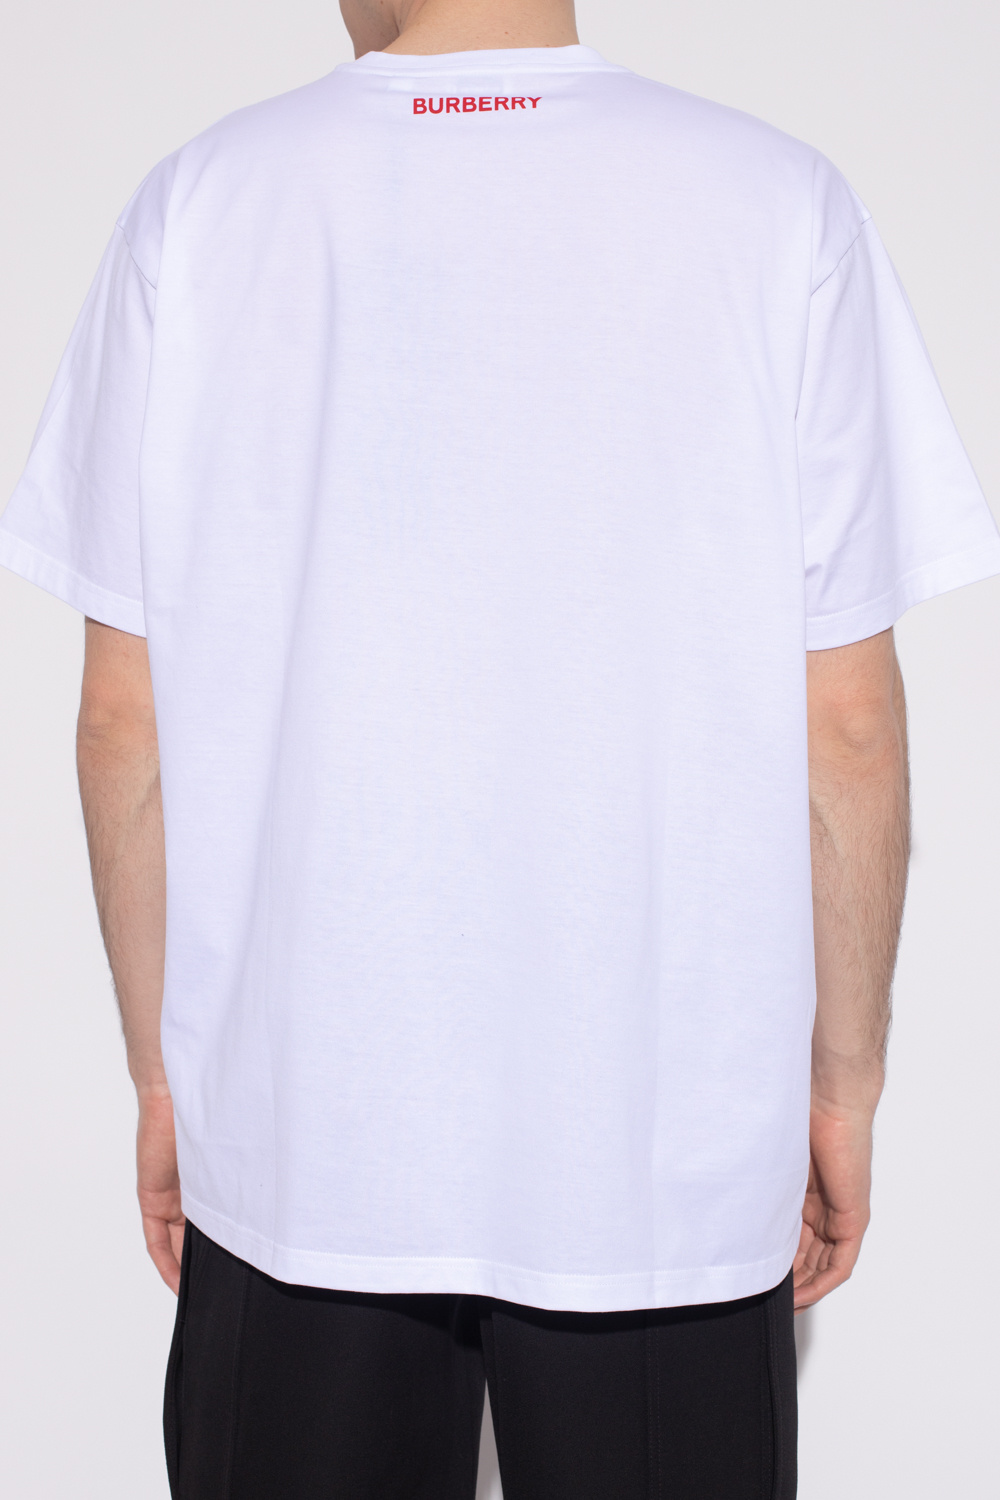 Burberry Printed T-shirt | Men's Clothing | Vitkac